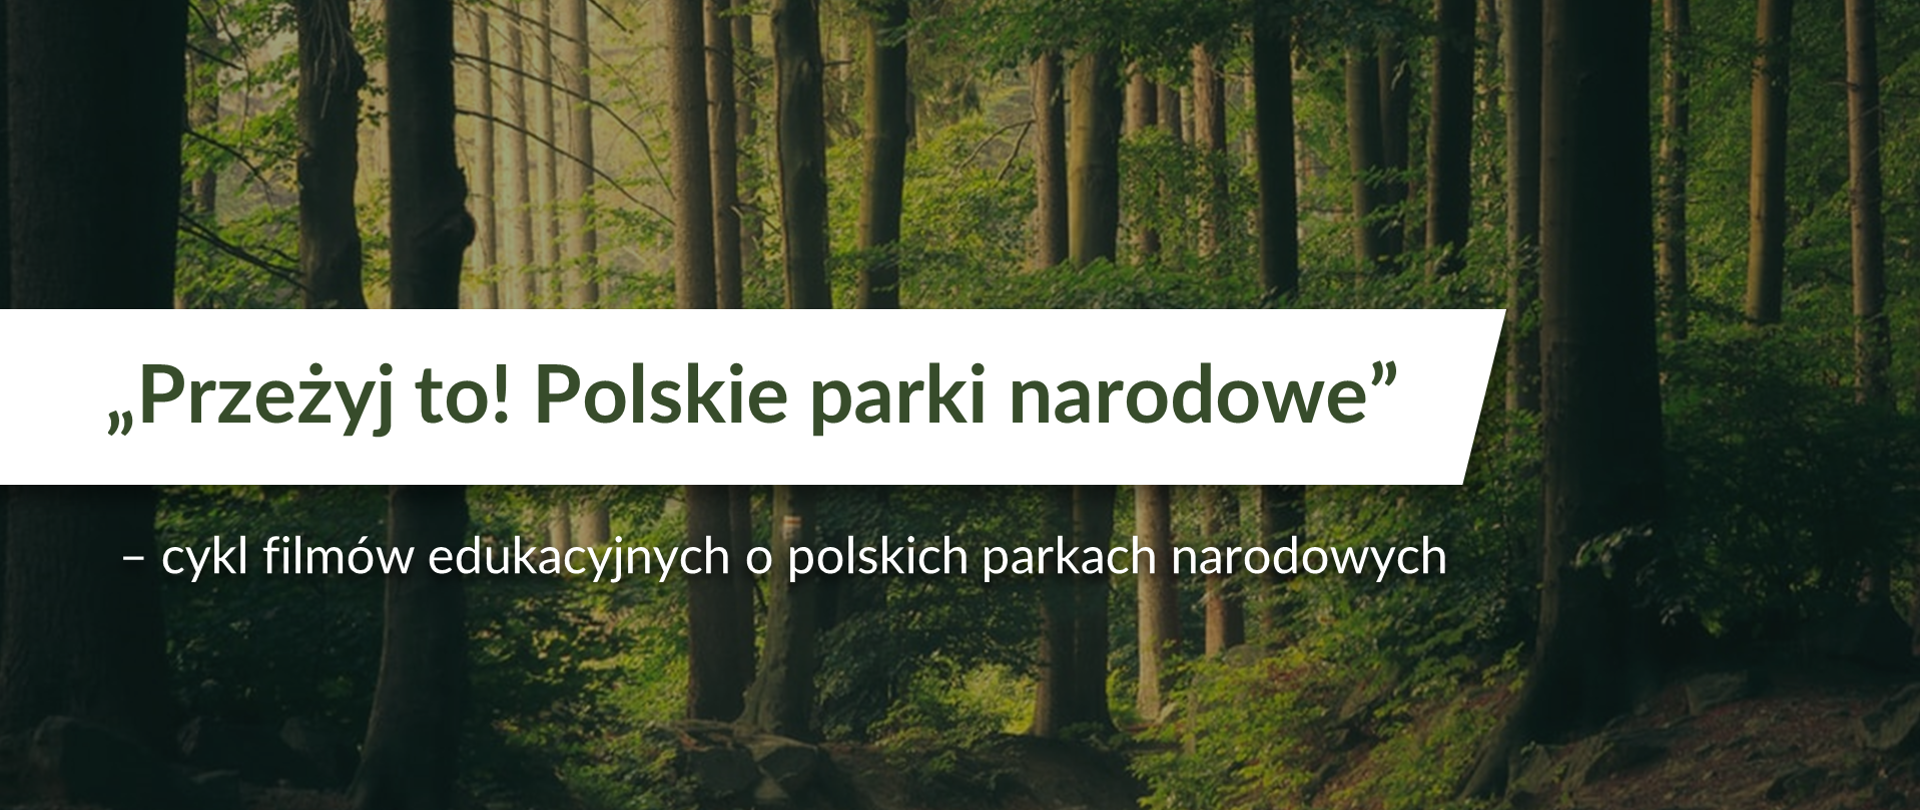 Leśna droga otoczona wysokimi drzewami. Na środku napis Przeżyj to! Polskie parki narodowe - cykl filmów edukacyjnych o polskich parkach narodowych 